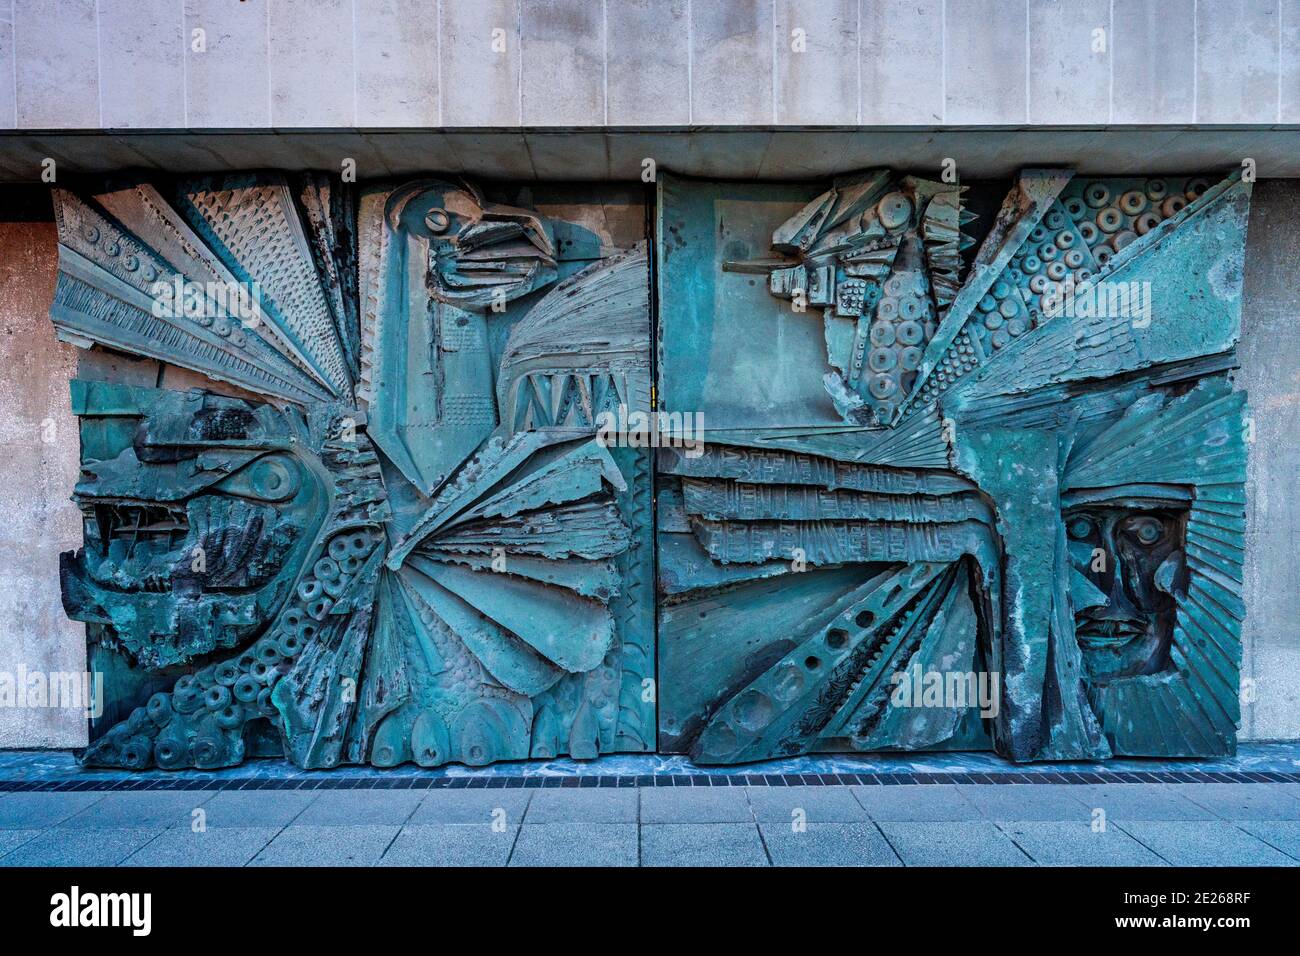 Haupteingangstüren zur Liverpool Metropolitan Cathedral mit Szenen aus dem Alten Testament im Relief. Türentwurf des Bildhauers William Mitchell (1925-2020). Stockfoto